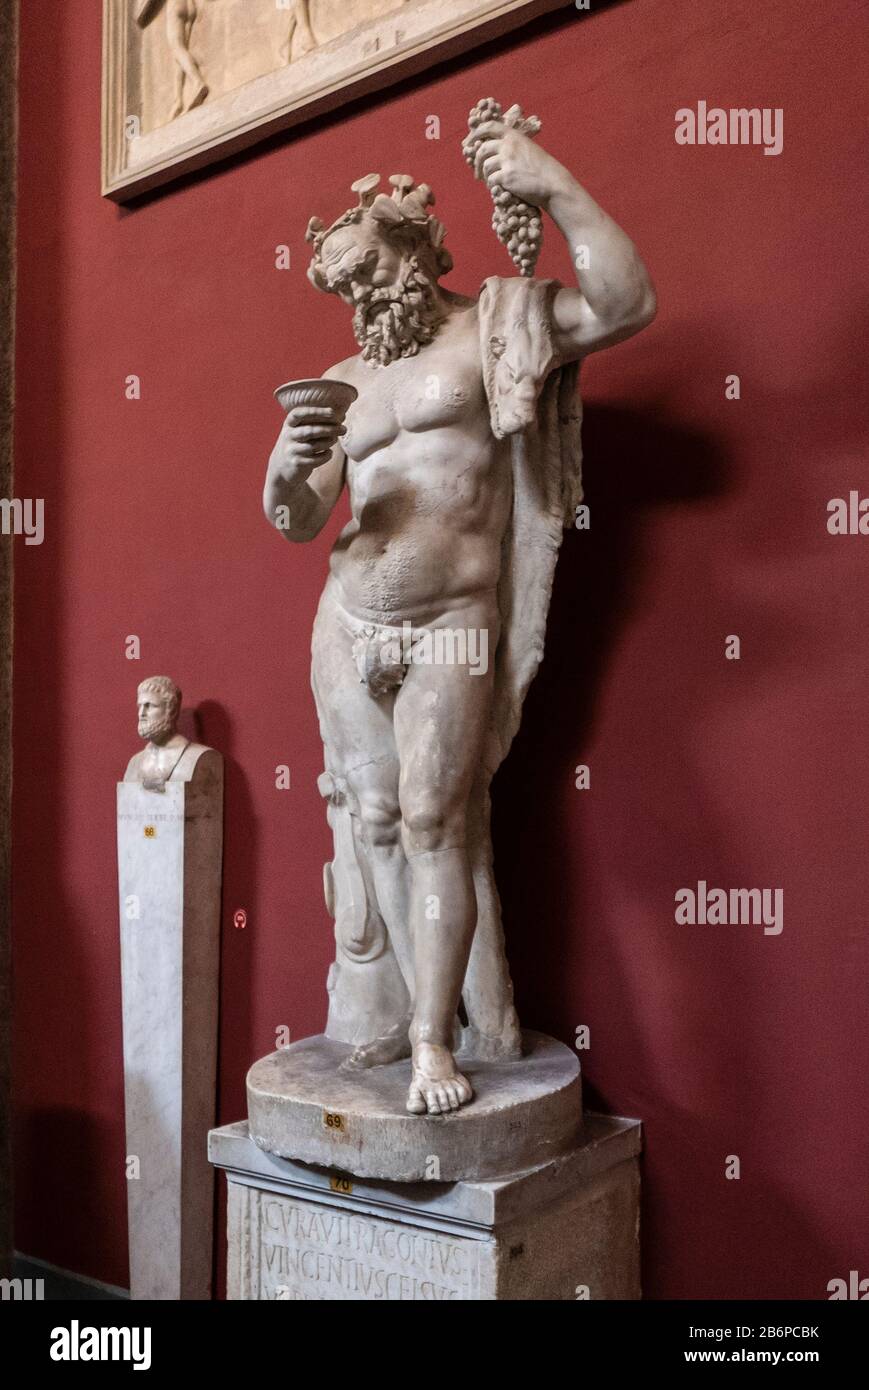 Sculpture ancienne de Bacchus, le dieu romain de l'agriculture, du vin et de la fertilité. Ici avec un groupe de raisins dans le Musée du Vatican, Rome, Italie. Banque D'Images